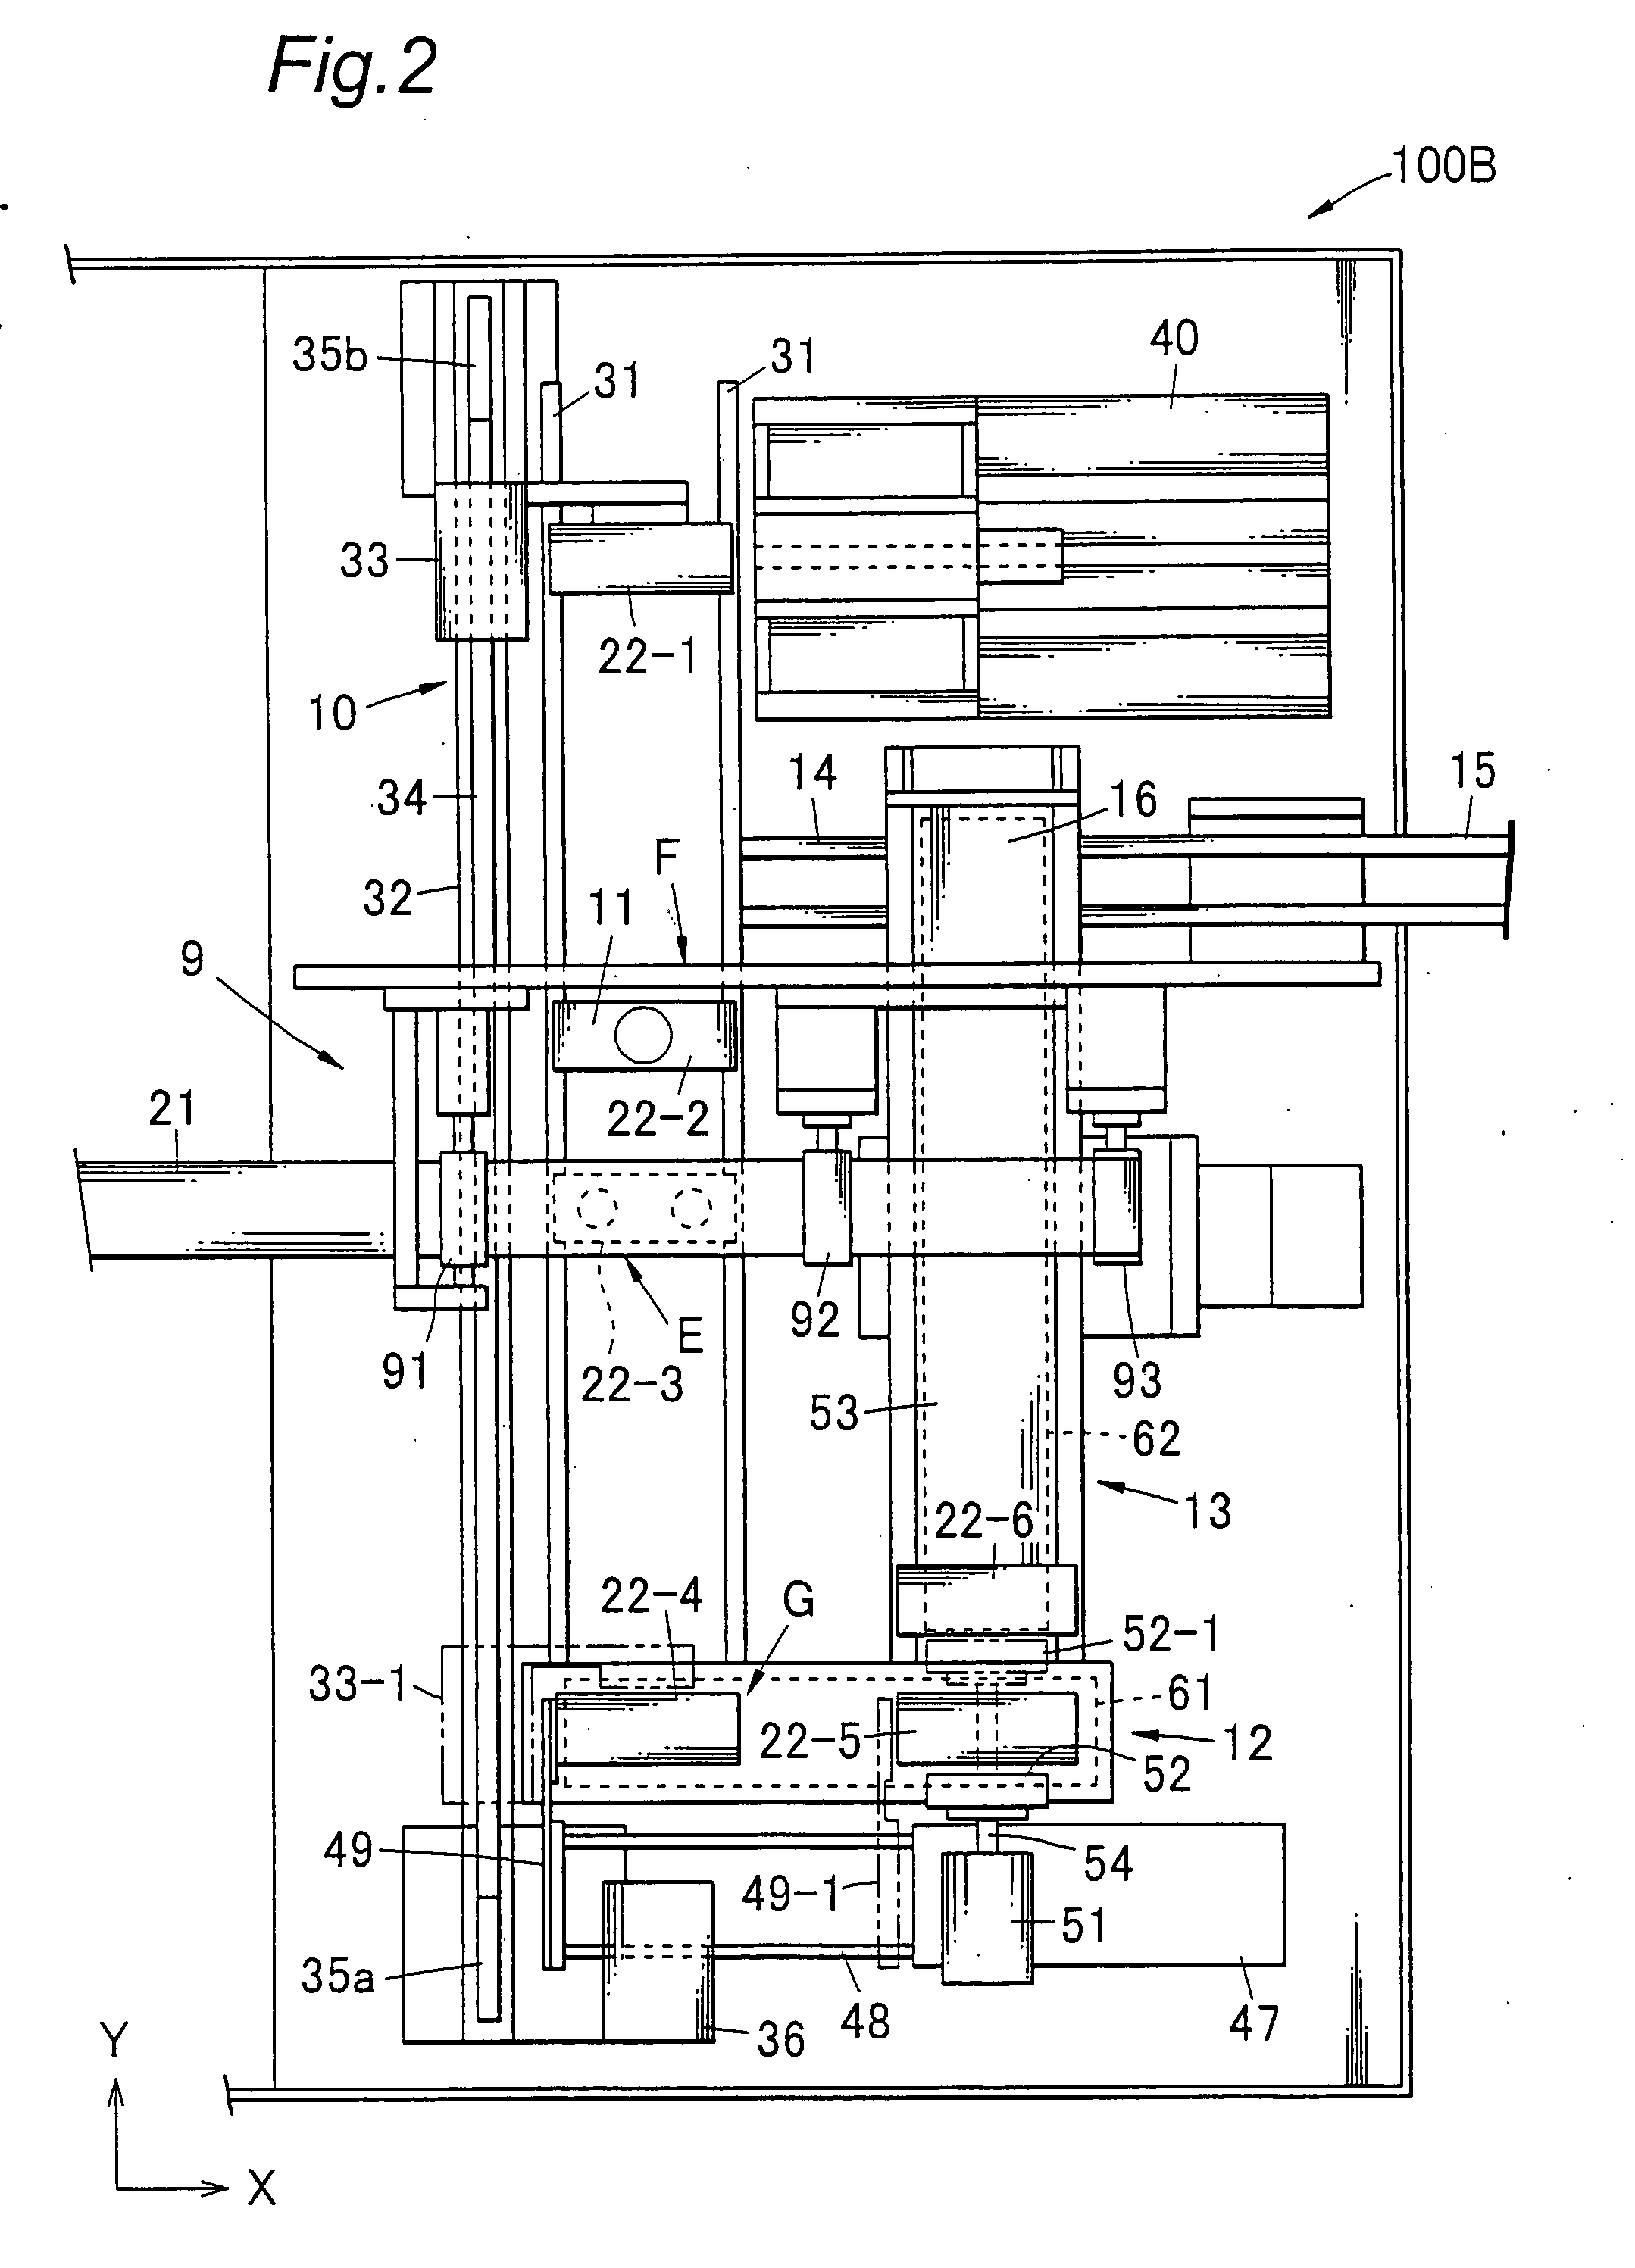 Apparatus and method for preparing sliced specimen